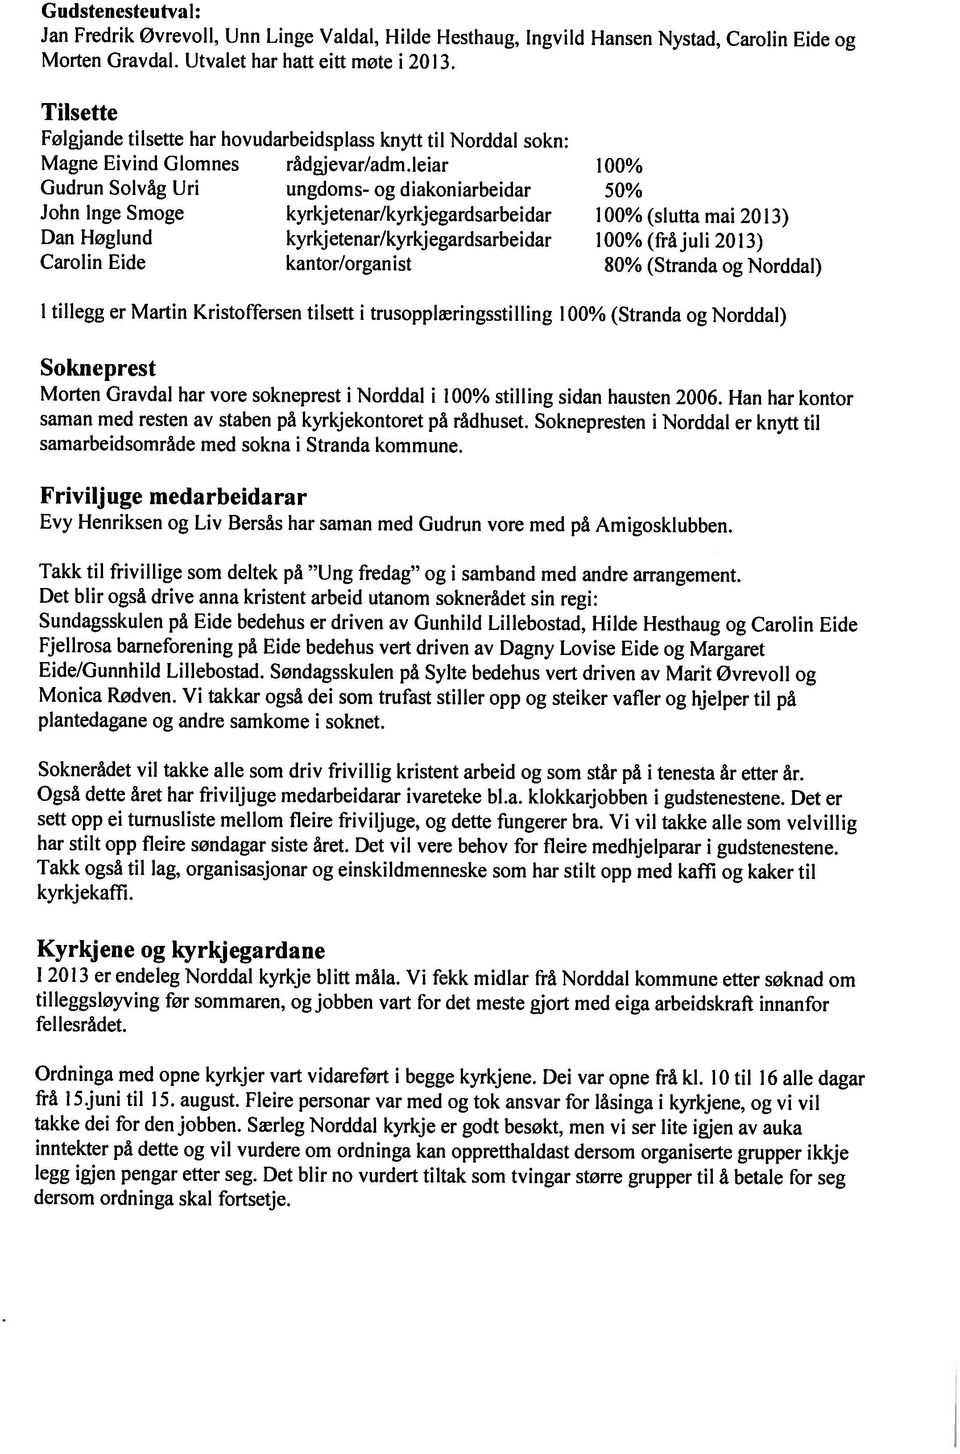 leiar 100% John Inge Smoge kyrljetcnar/kyrkjegardsarbeidar 100% (slutta mai 2013) Carolin Eide kantor/organist 80% (Stranda og Norddal) Ordninga med opne kyrkjer vart vidareført i begge kyrkjene.